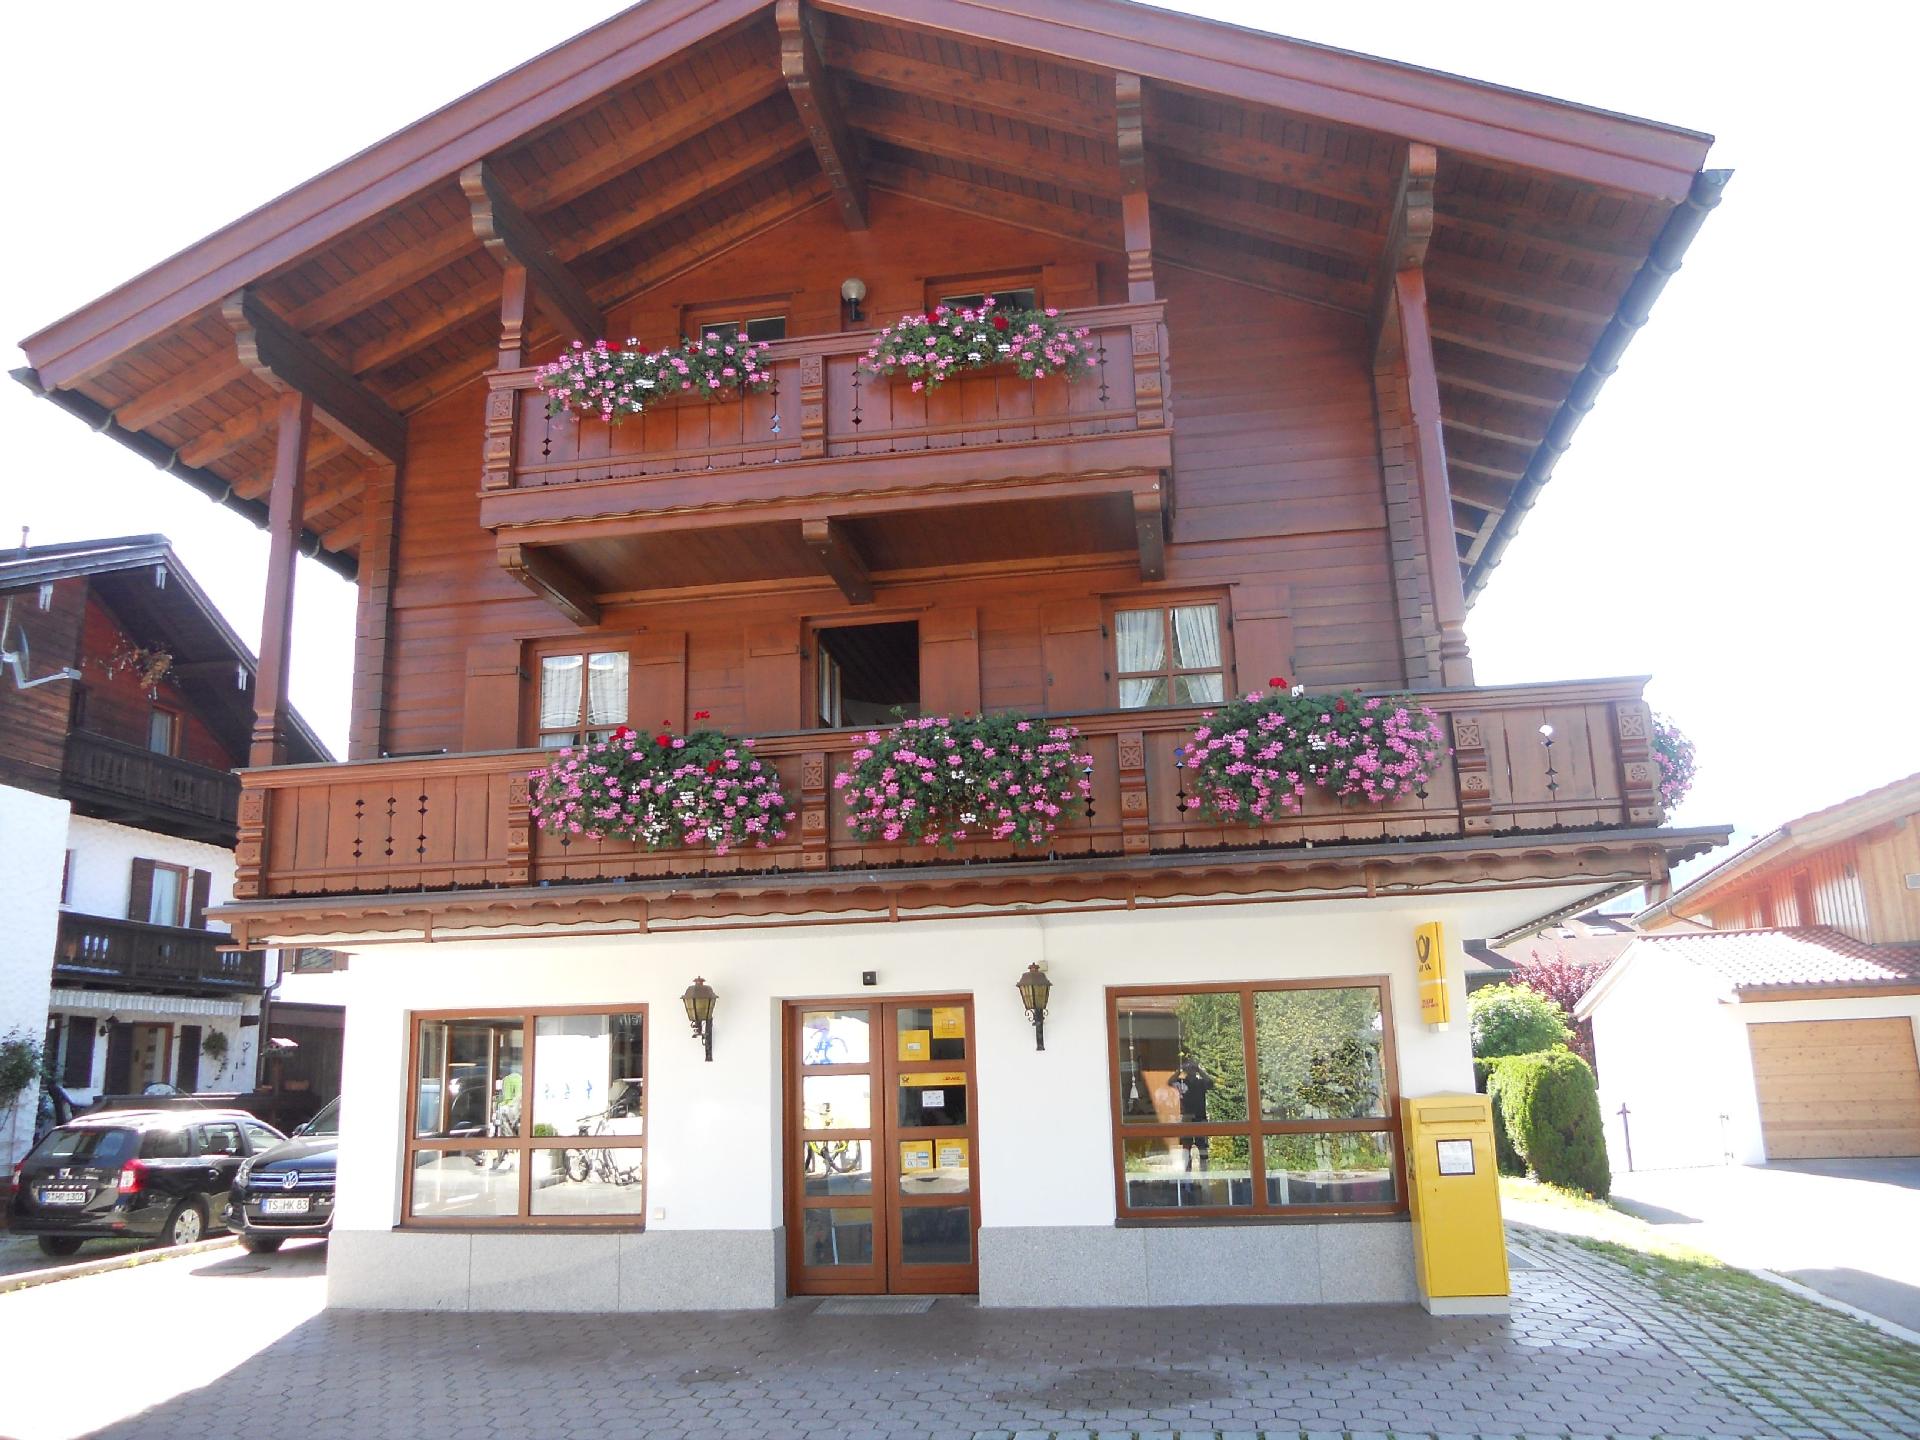 Gemütliche Ferienwohnung mit Balkonen, direkt   Chiemgau